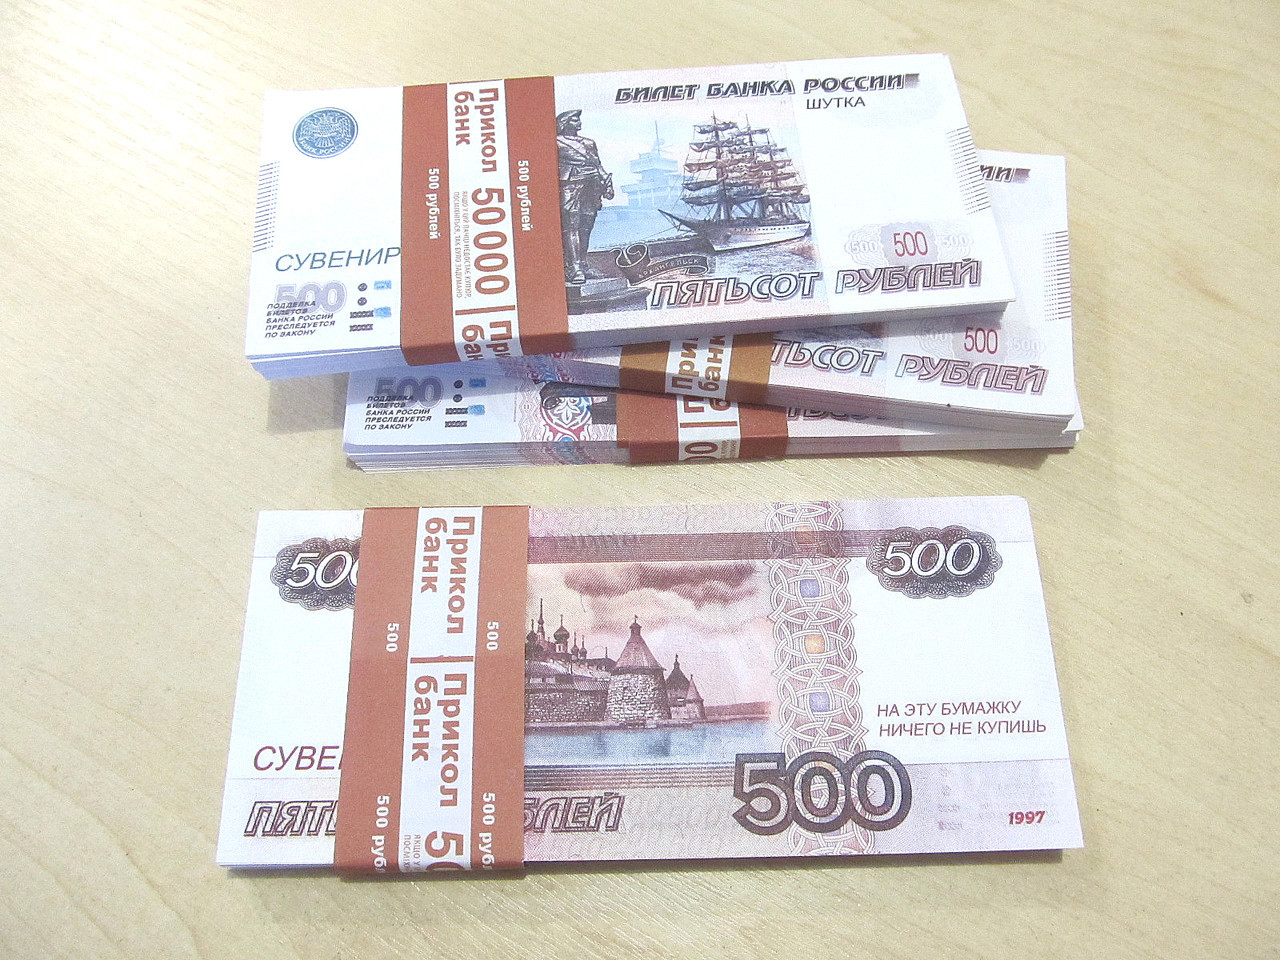 Пачка 500 рублей. Сувенирные деньги. 500 Рублей пачка. Пачка денег 500 рублей. Пачка по 500 рублей.